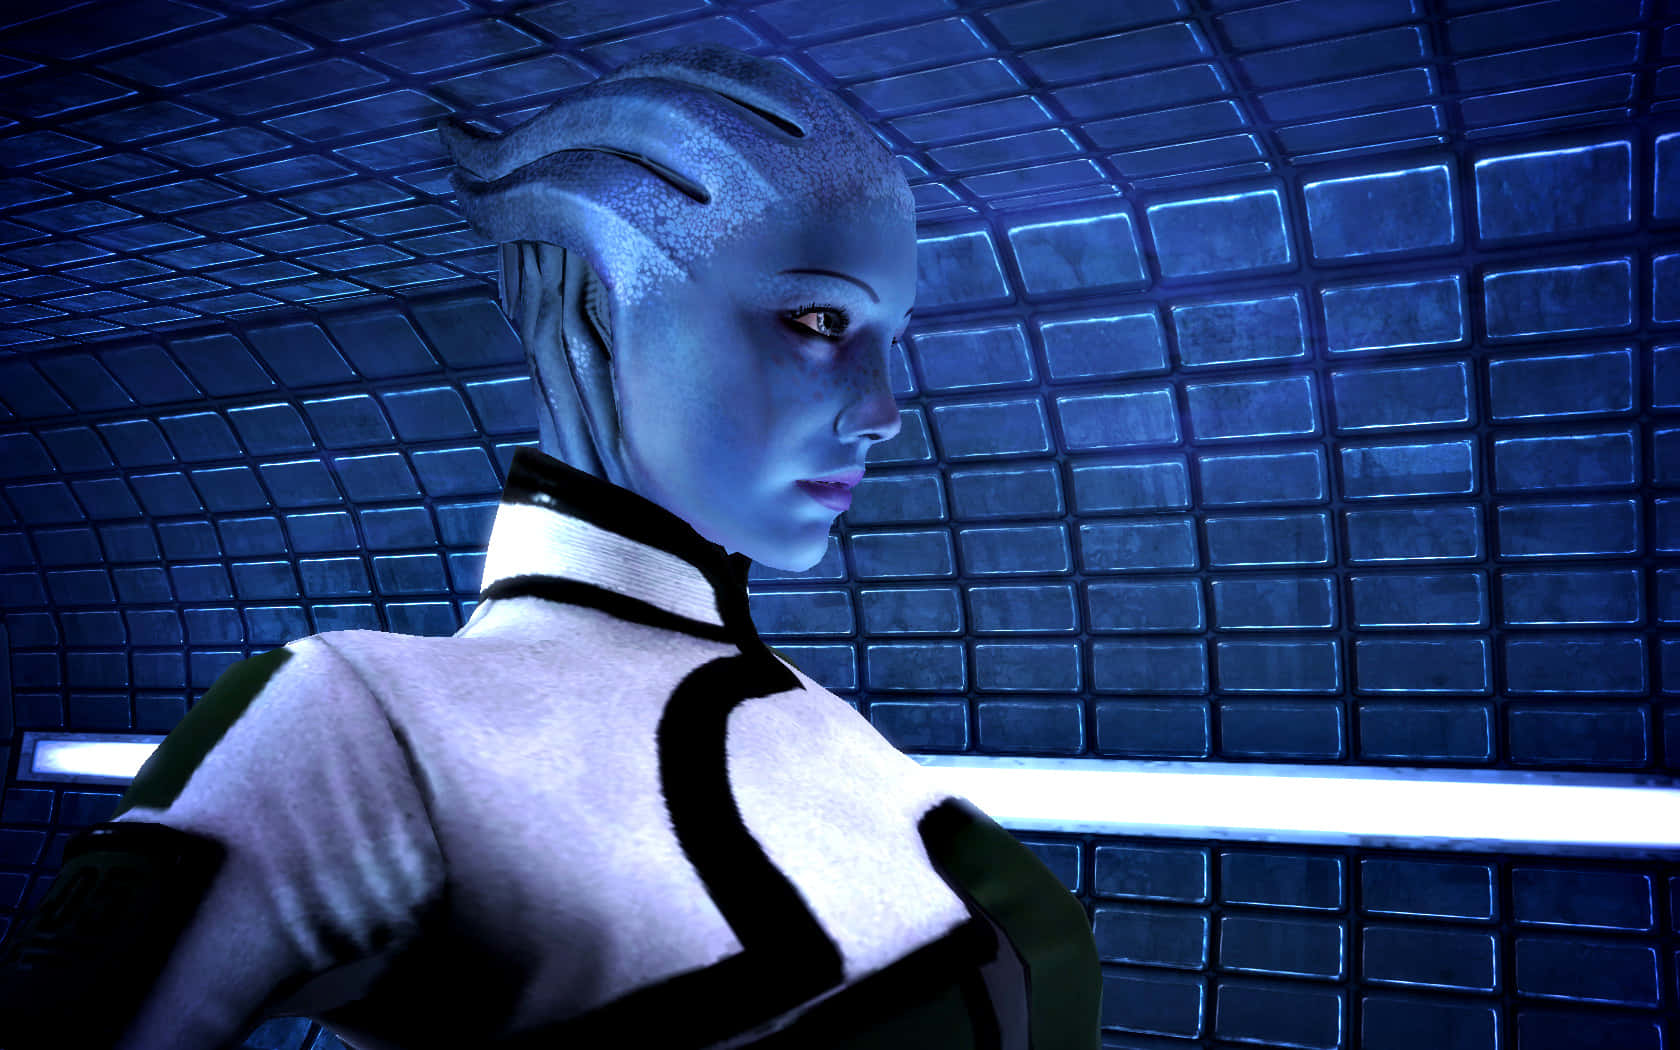 Liarat'soni, La Científica Asari Y Compañera En El Universo De Mass Effect. Fondo de pantalla